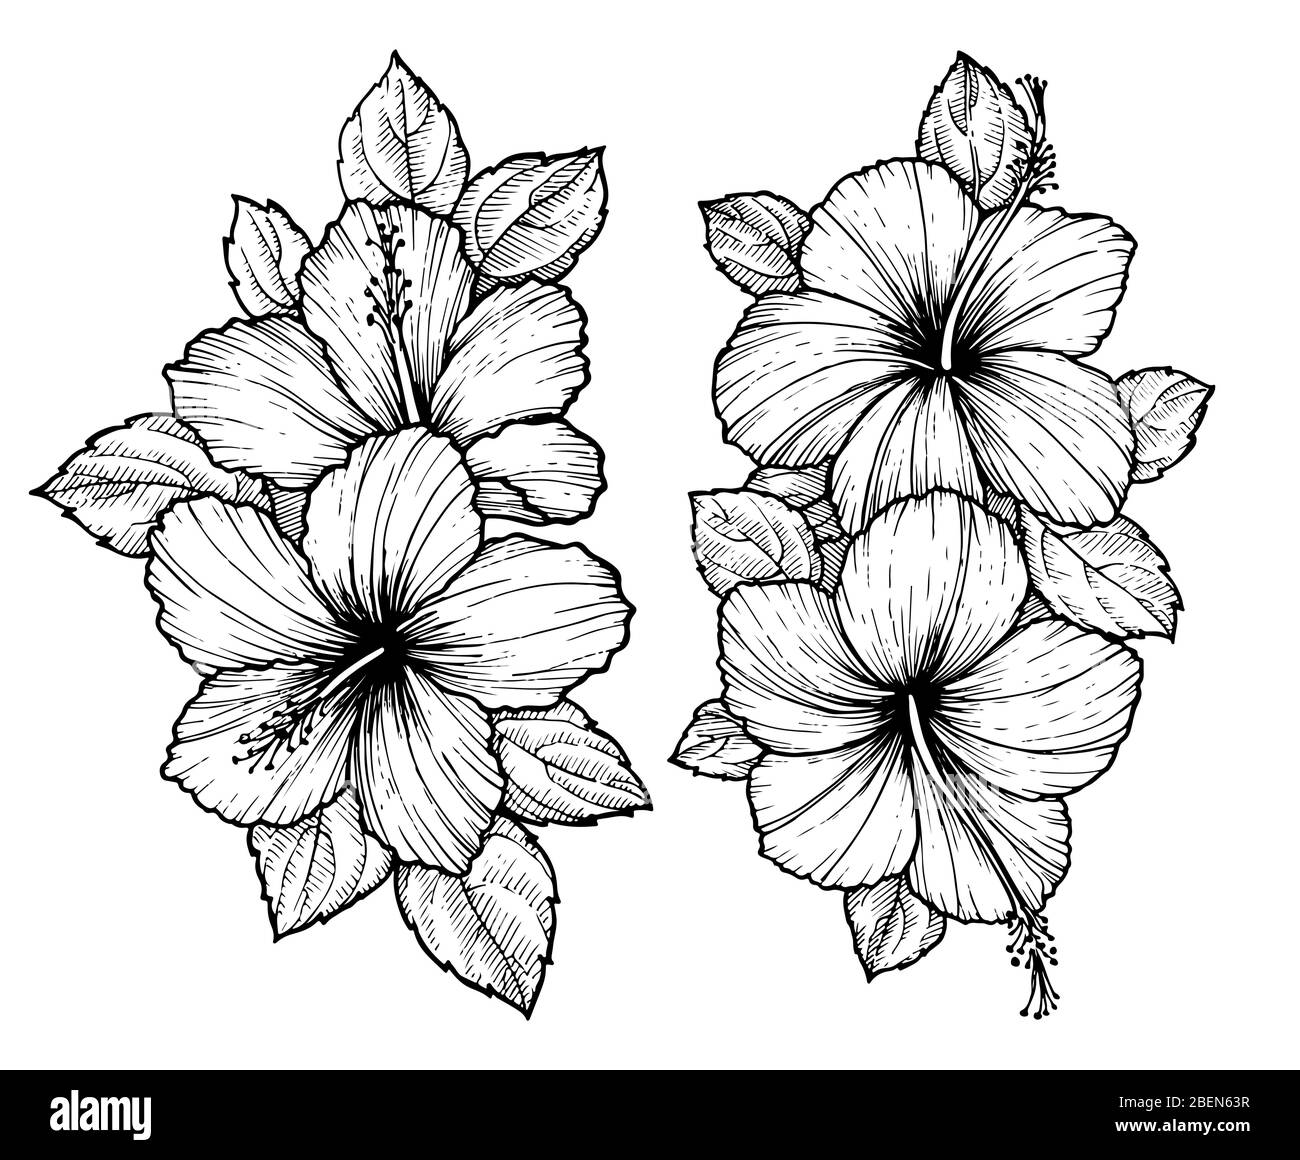 Bouquet de fleurs d'hibiscus tropical dessiné à la main avec feuilles. Esquissez des fleurs sur fond blanc. Fleurs exotiques, style gravure pour textile, dénig de surface Illustration de Vecteur